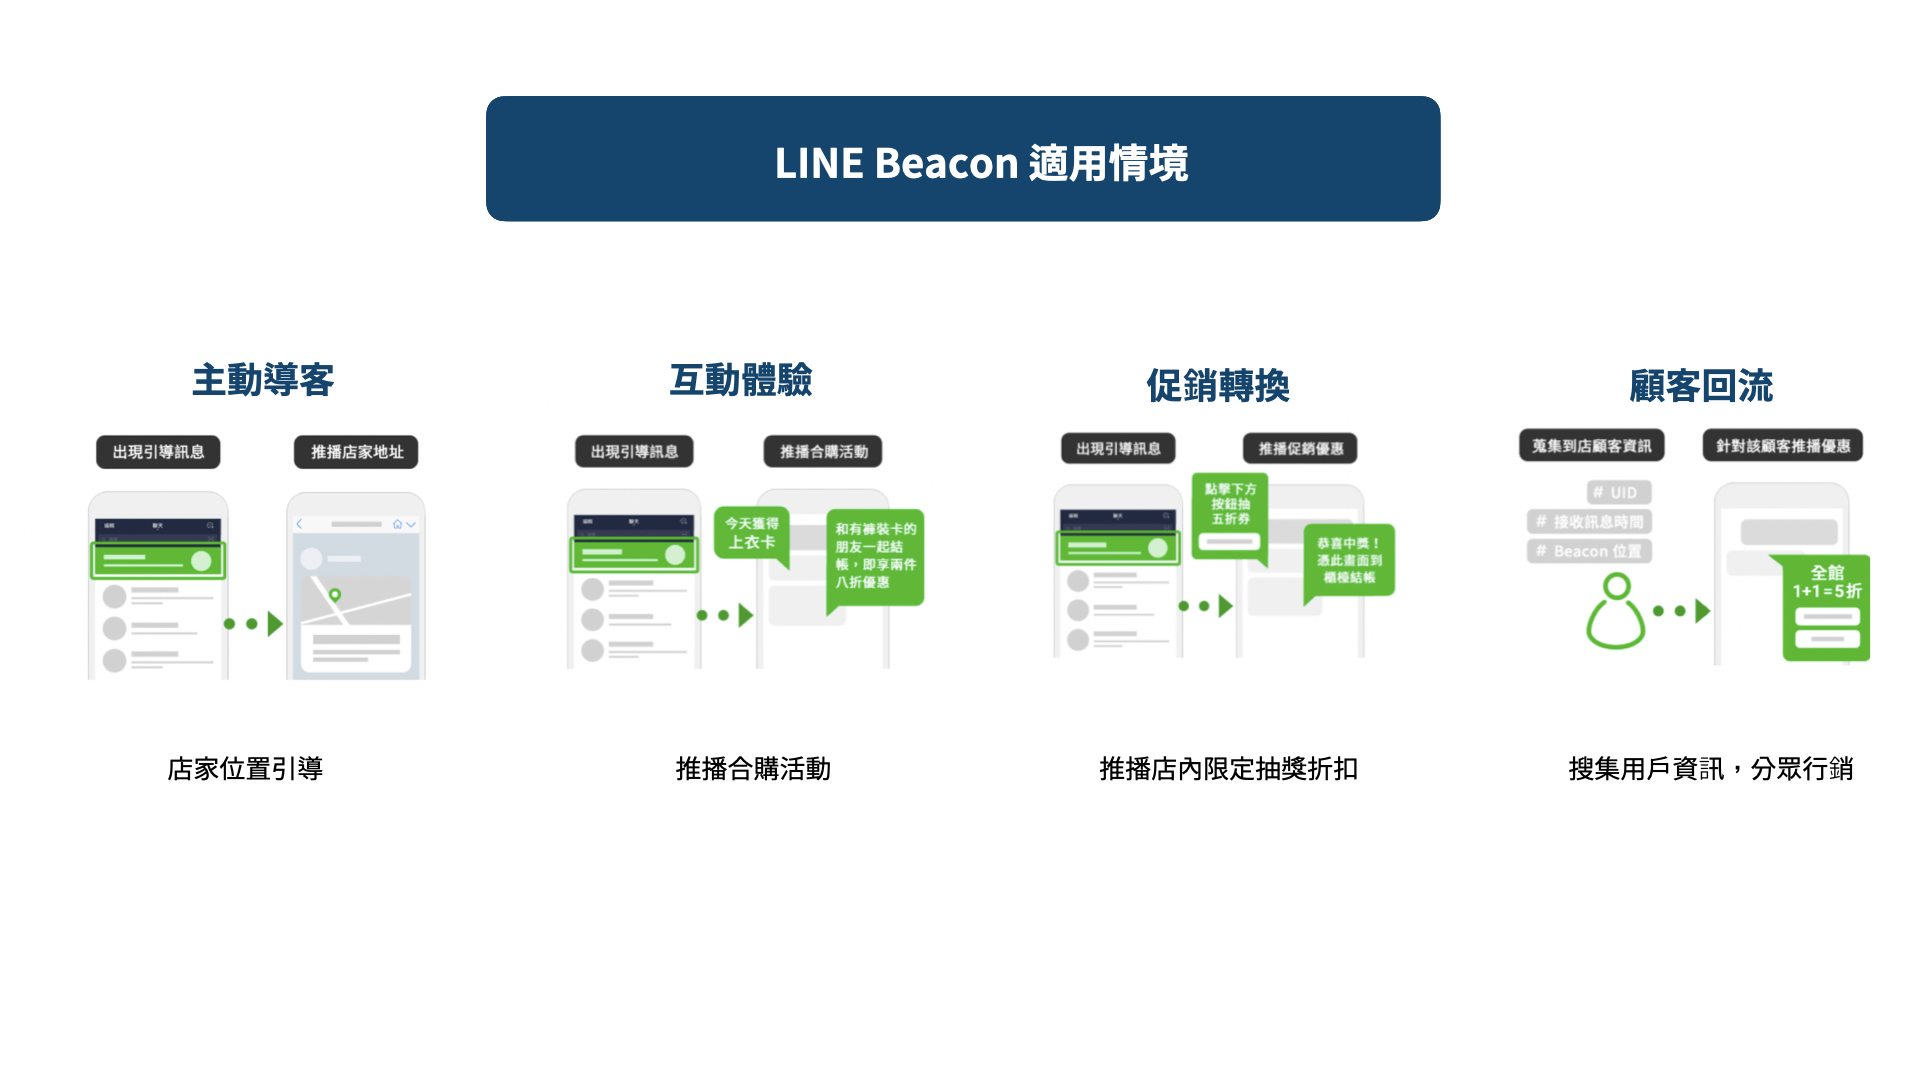 LINE Beacon 適用情境